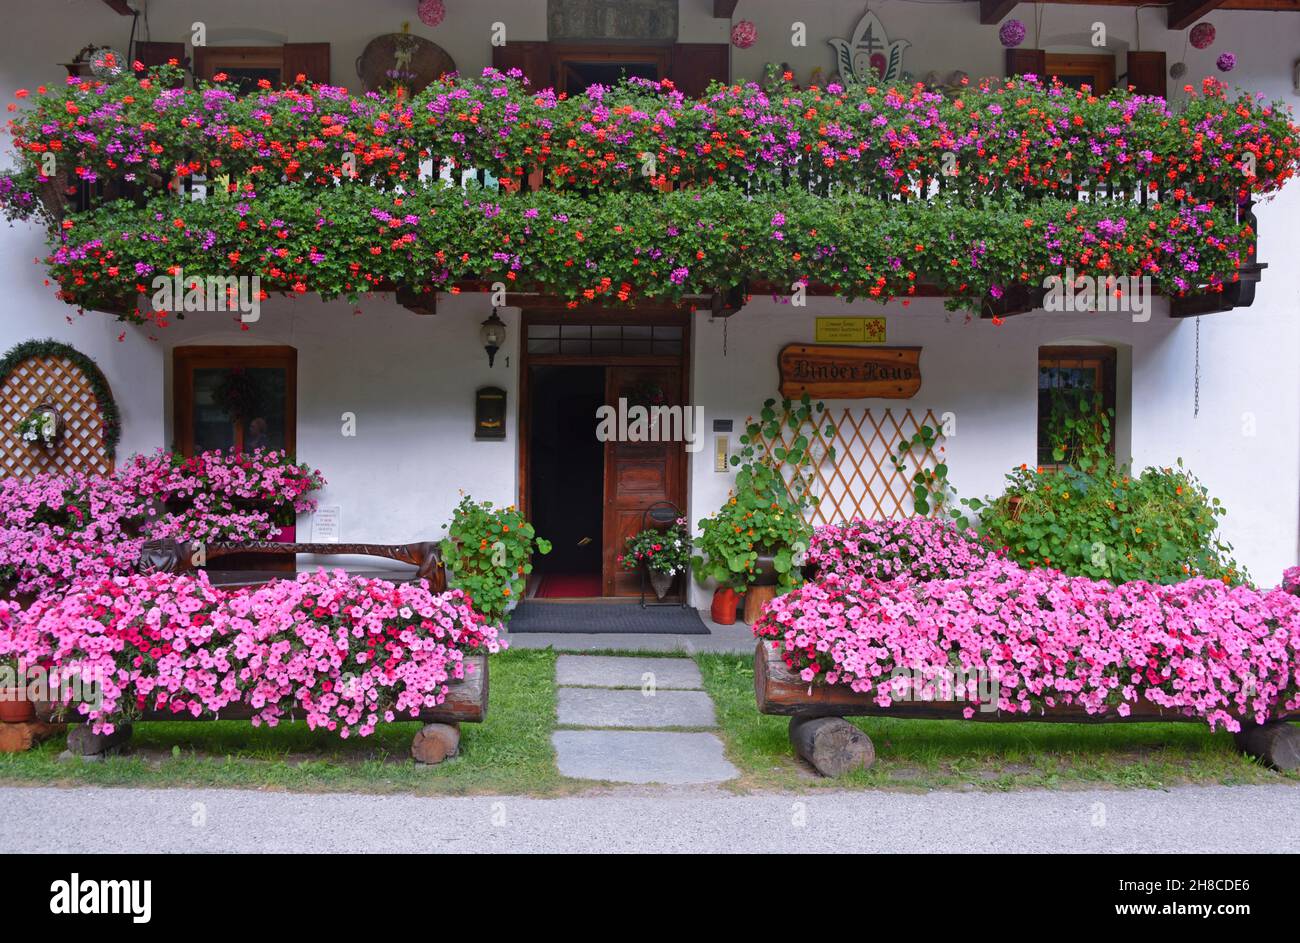 Splendidi gerani fioriti e petunias su una casa, Italia, Valle d'Aosta, Gressoney Foto Stock